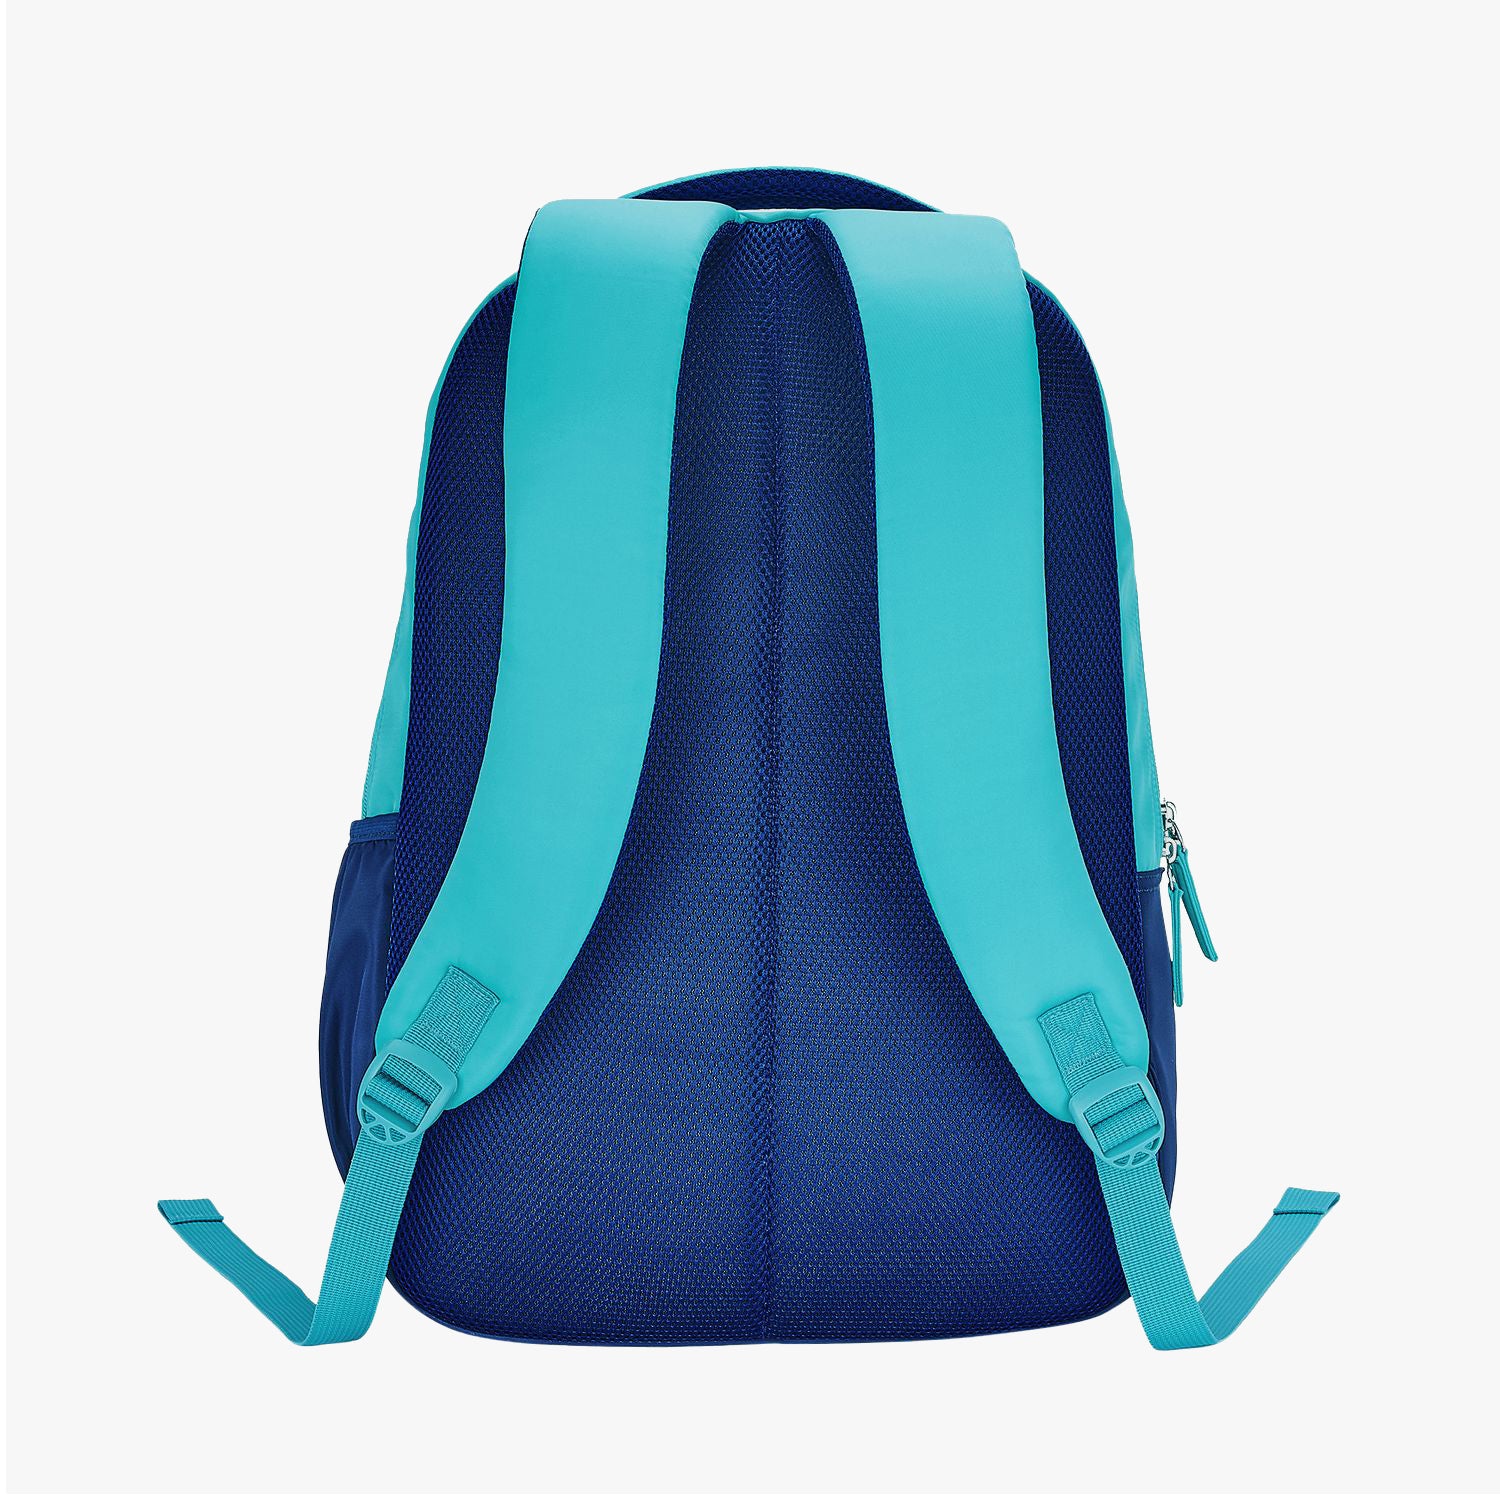 Snowflake School Backpack - Teal